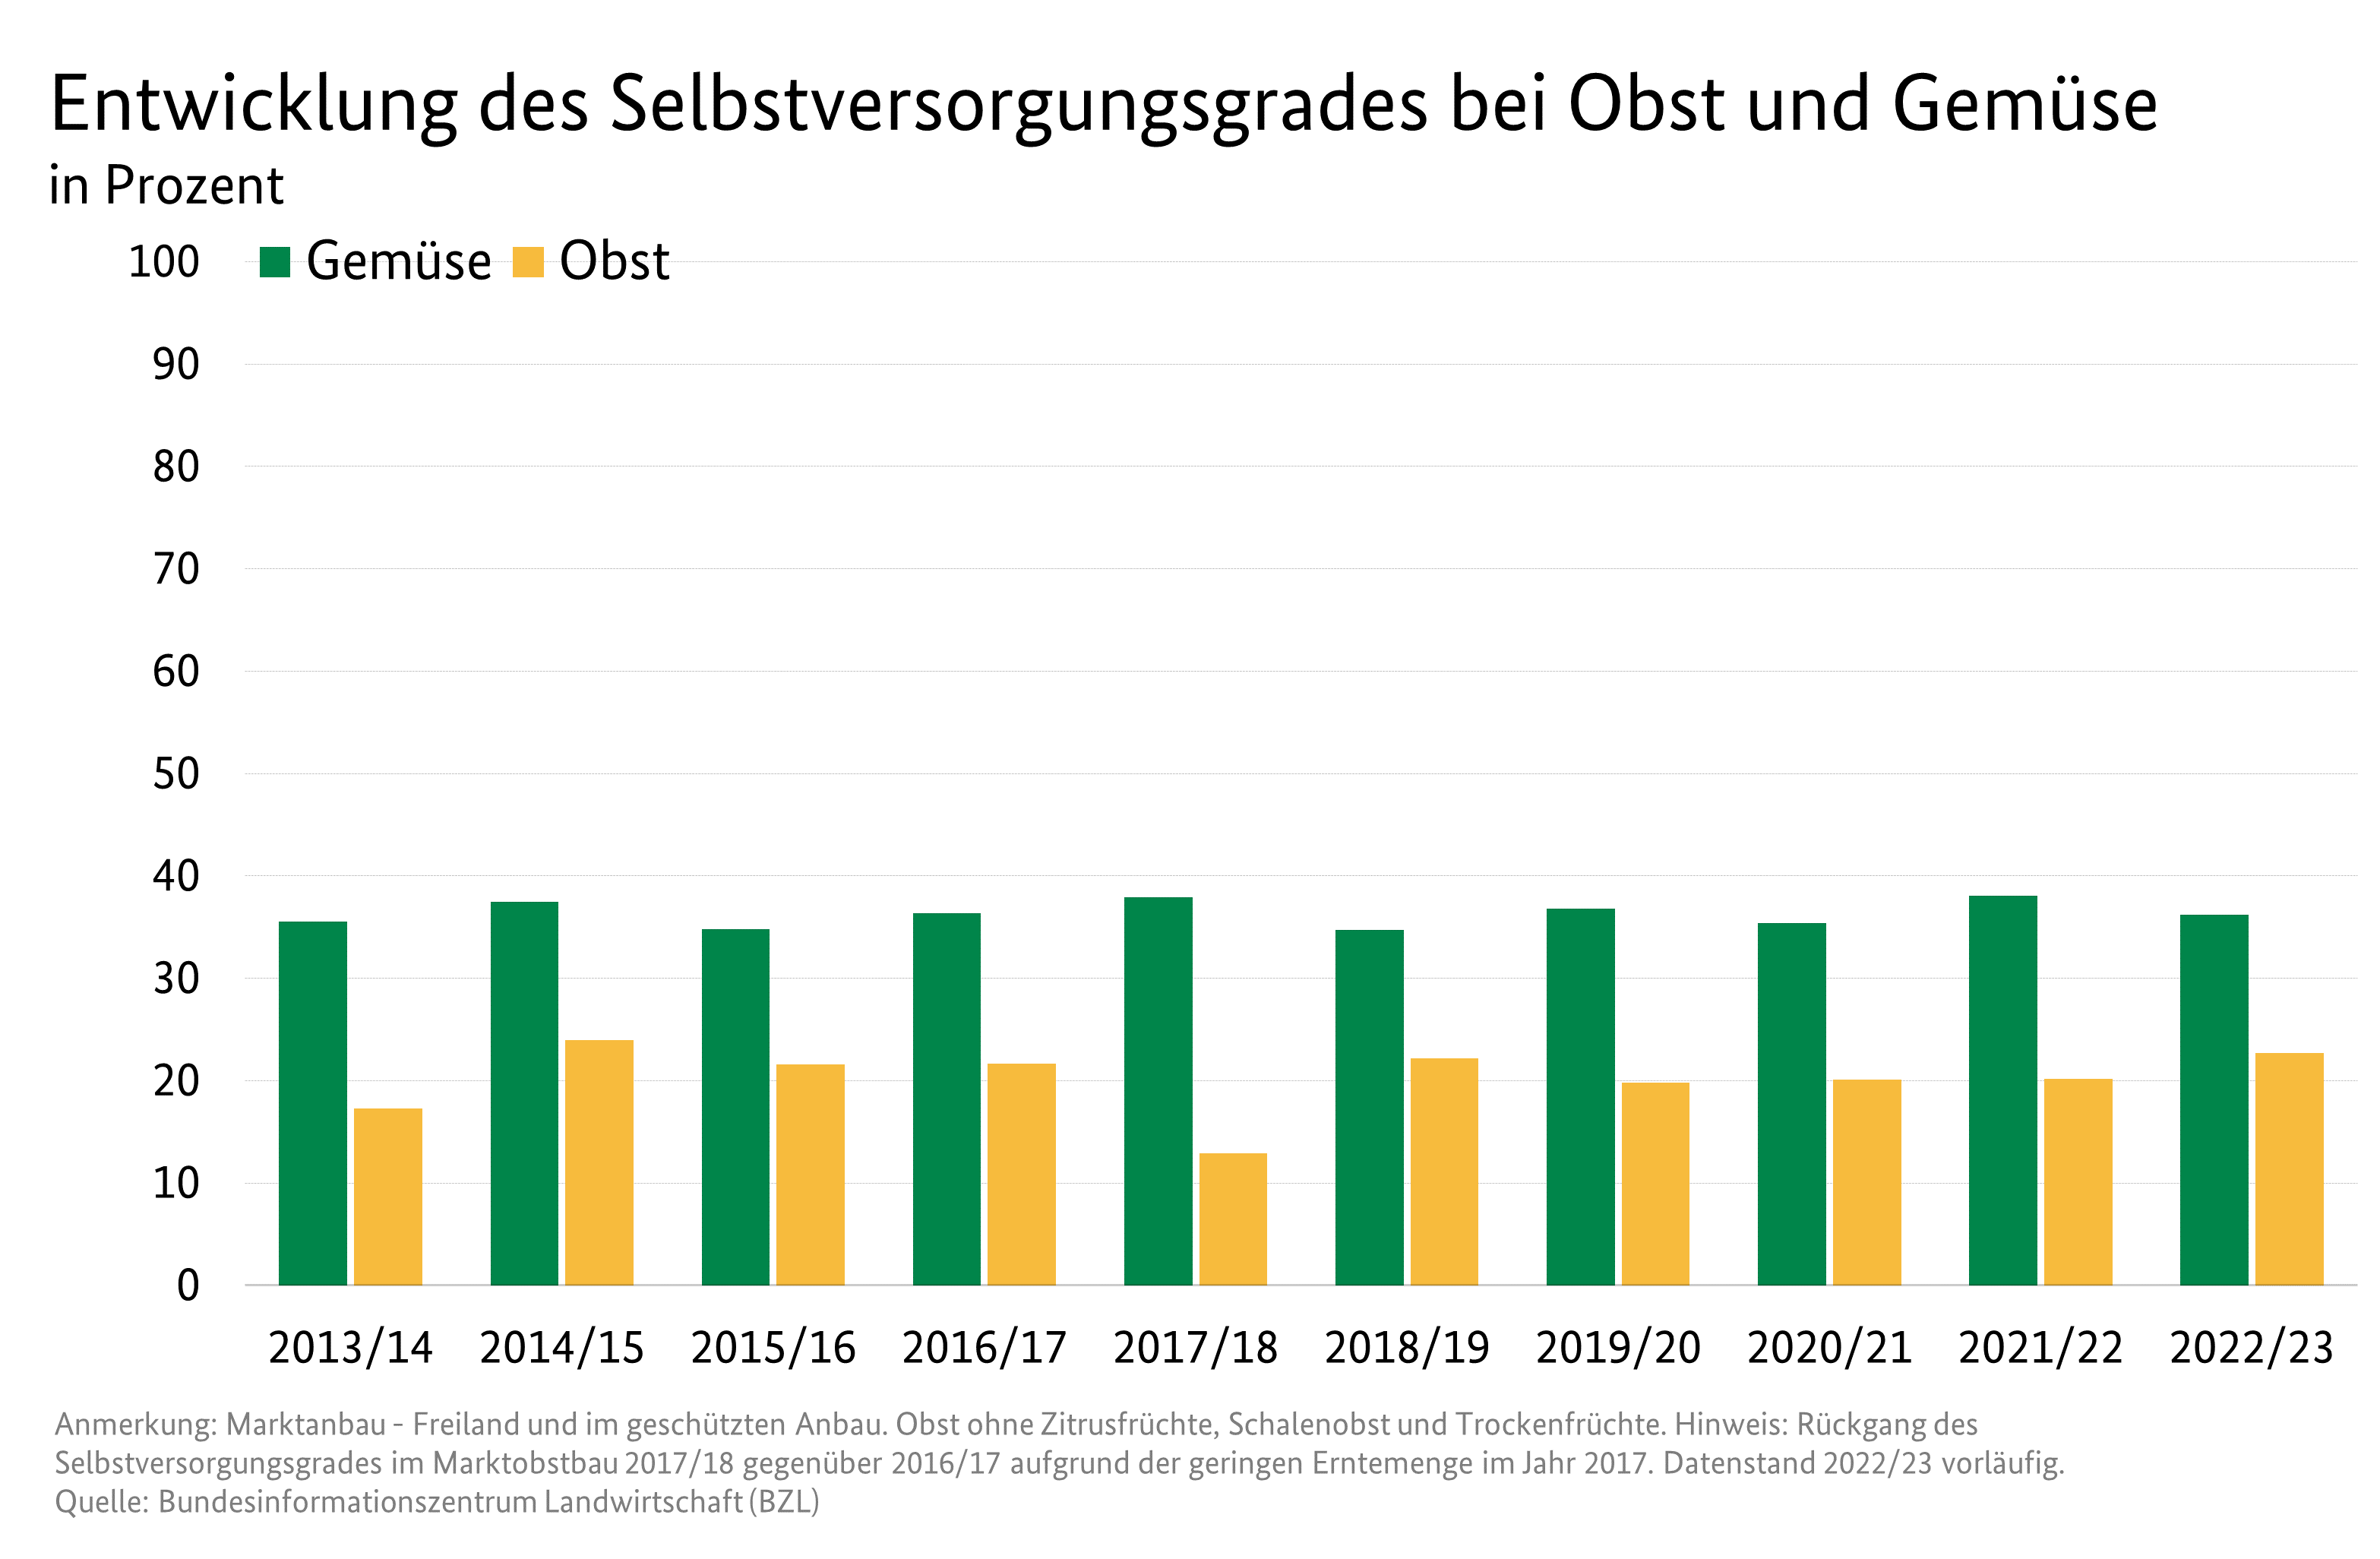 Säulendiagramm: Selbstversorgungsgrad bei Obst und Gemüse in Deutschland: Zeitreihe beginnend ab 1990/91. Werte bei Gemüse schwanken zwischen 30 und 40 %. Bei Obst sind es 13 bis 20 %.